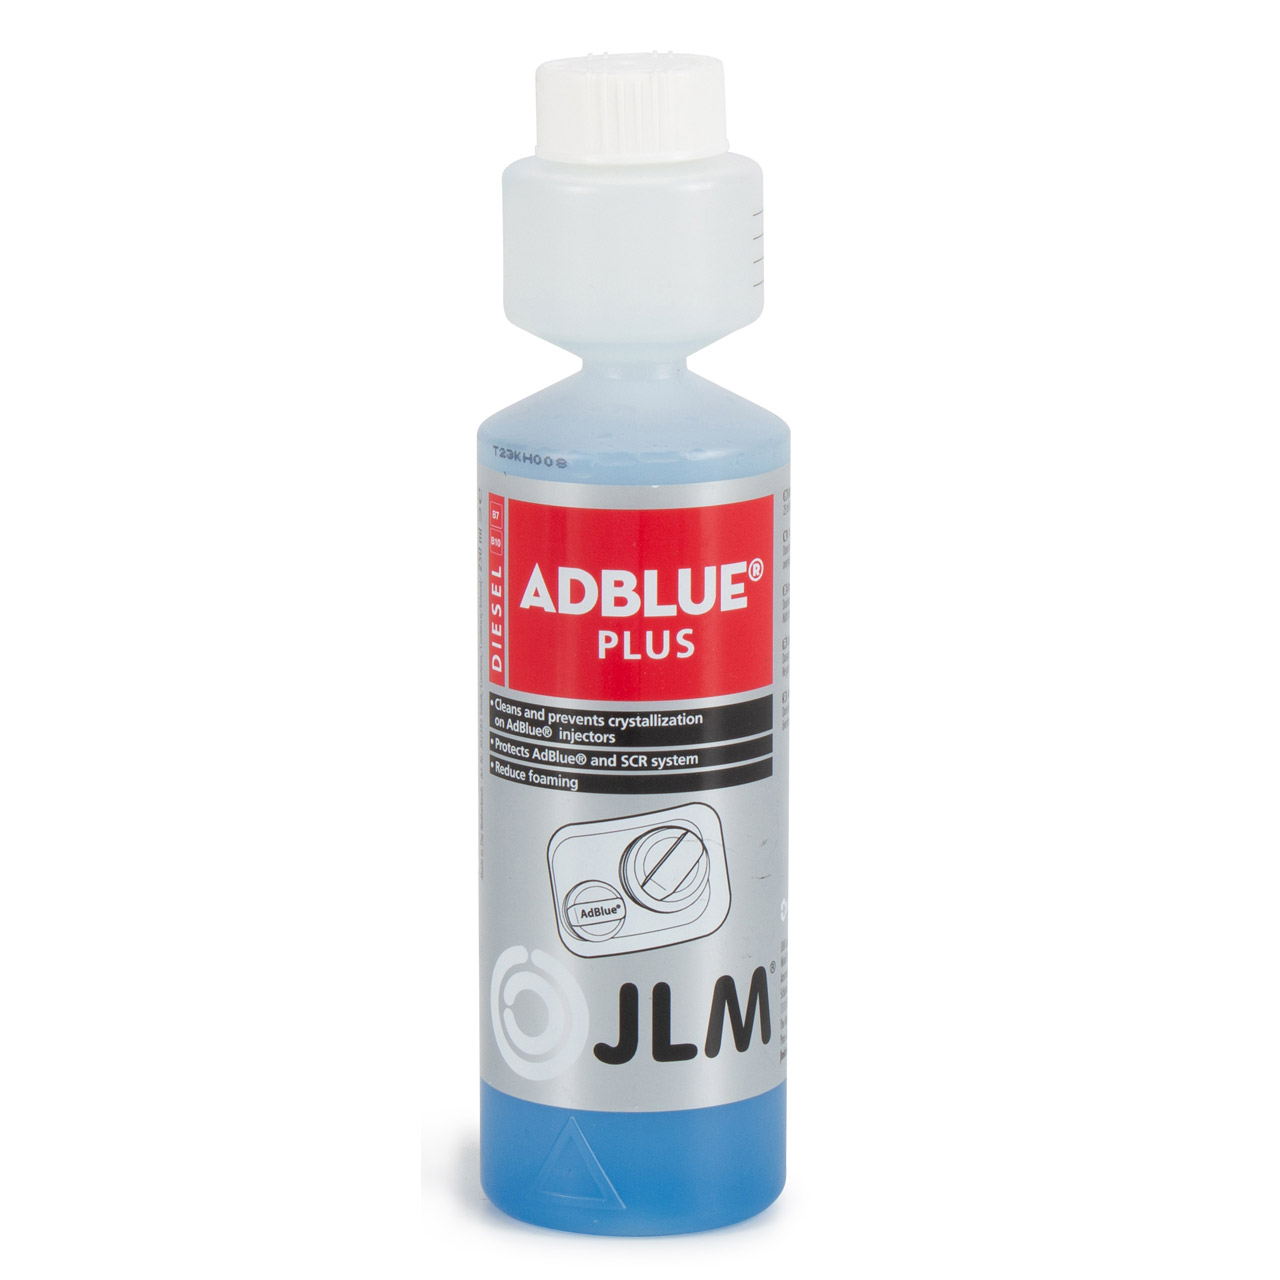 JLM Diesel Rußpartikelfilter (DPF) Reiniger 375ml Lubricants Diesel  Particulate Filter Cleaner